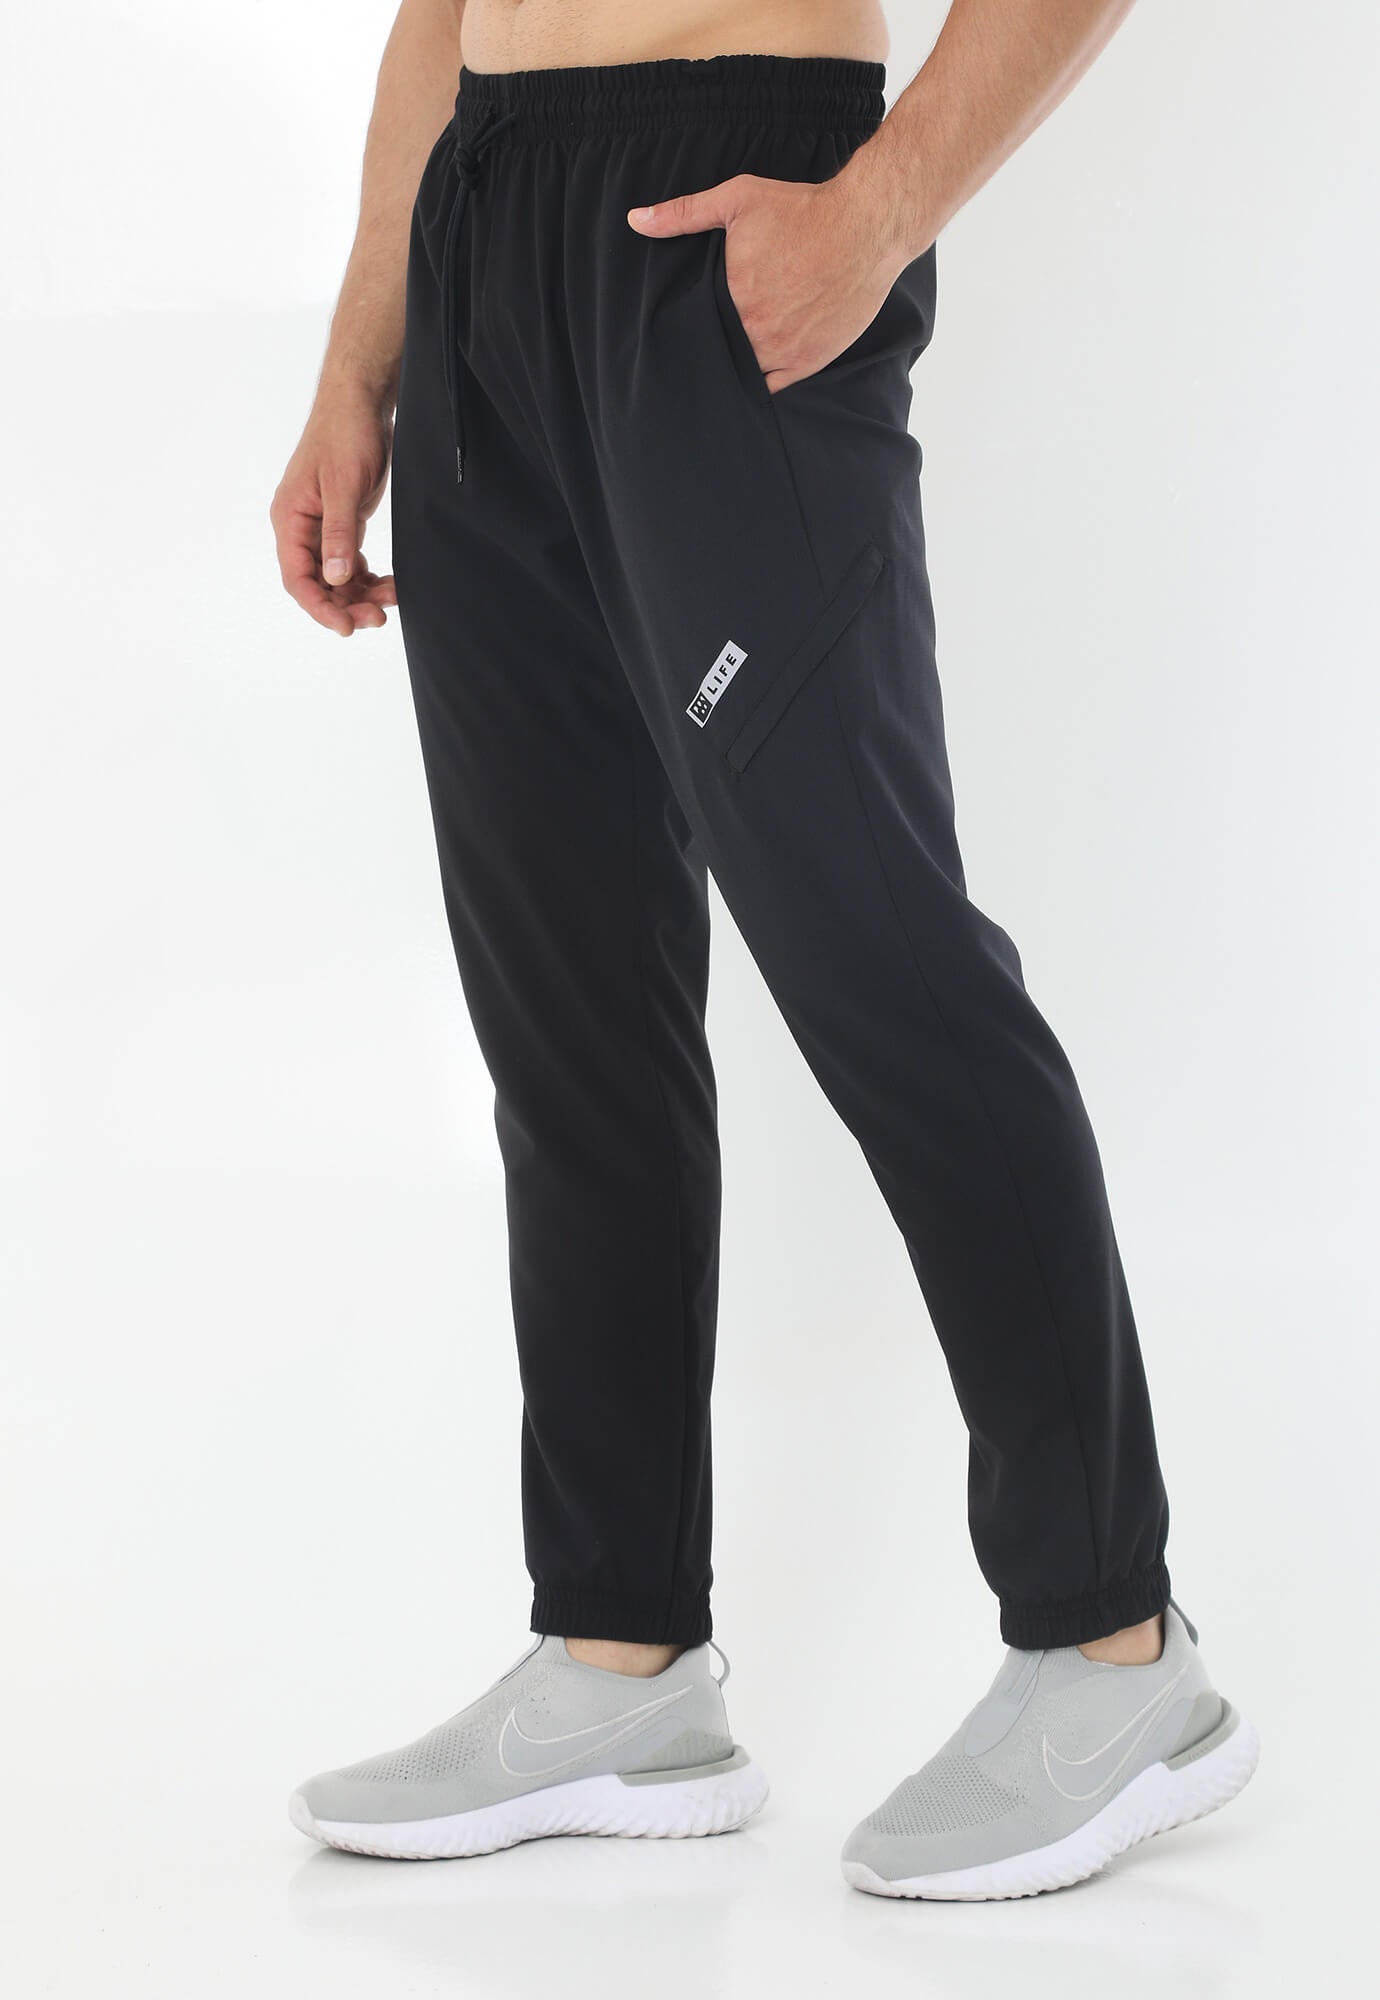 Pantalón deportivo negro tipo jogger con silueta ajustada, pretina con cordón ajustable y bolsillos laterales para hombre